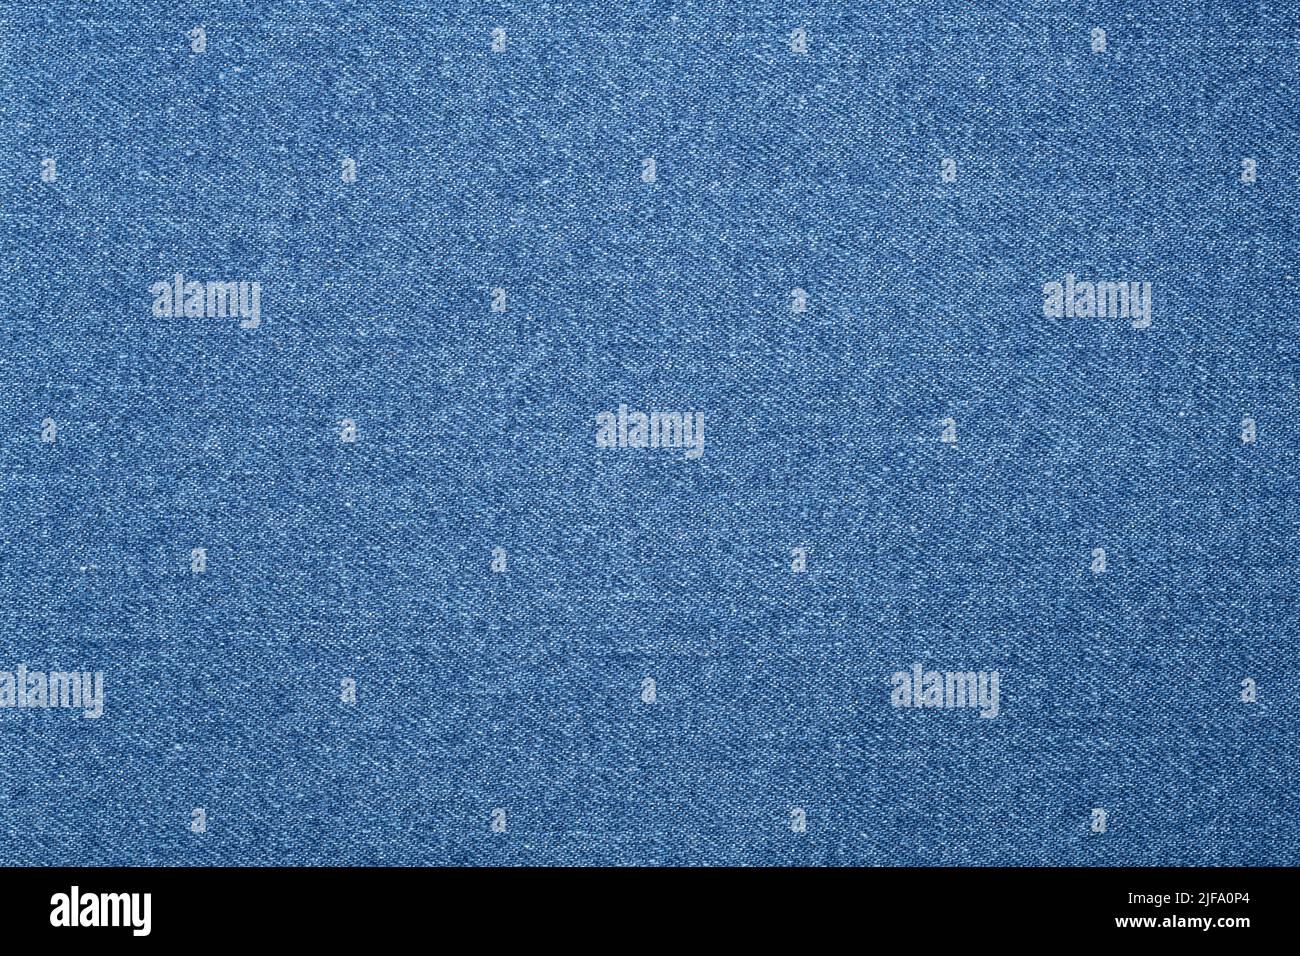 Fondo de tela texturizada. Una textura jean o denim en azul claro. Foto de stock